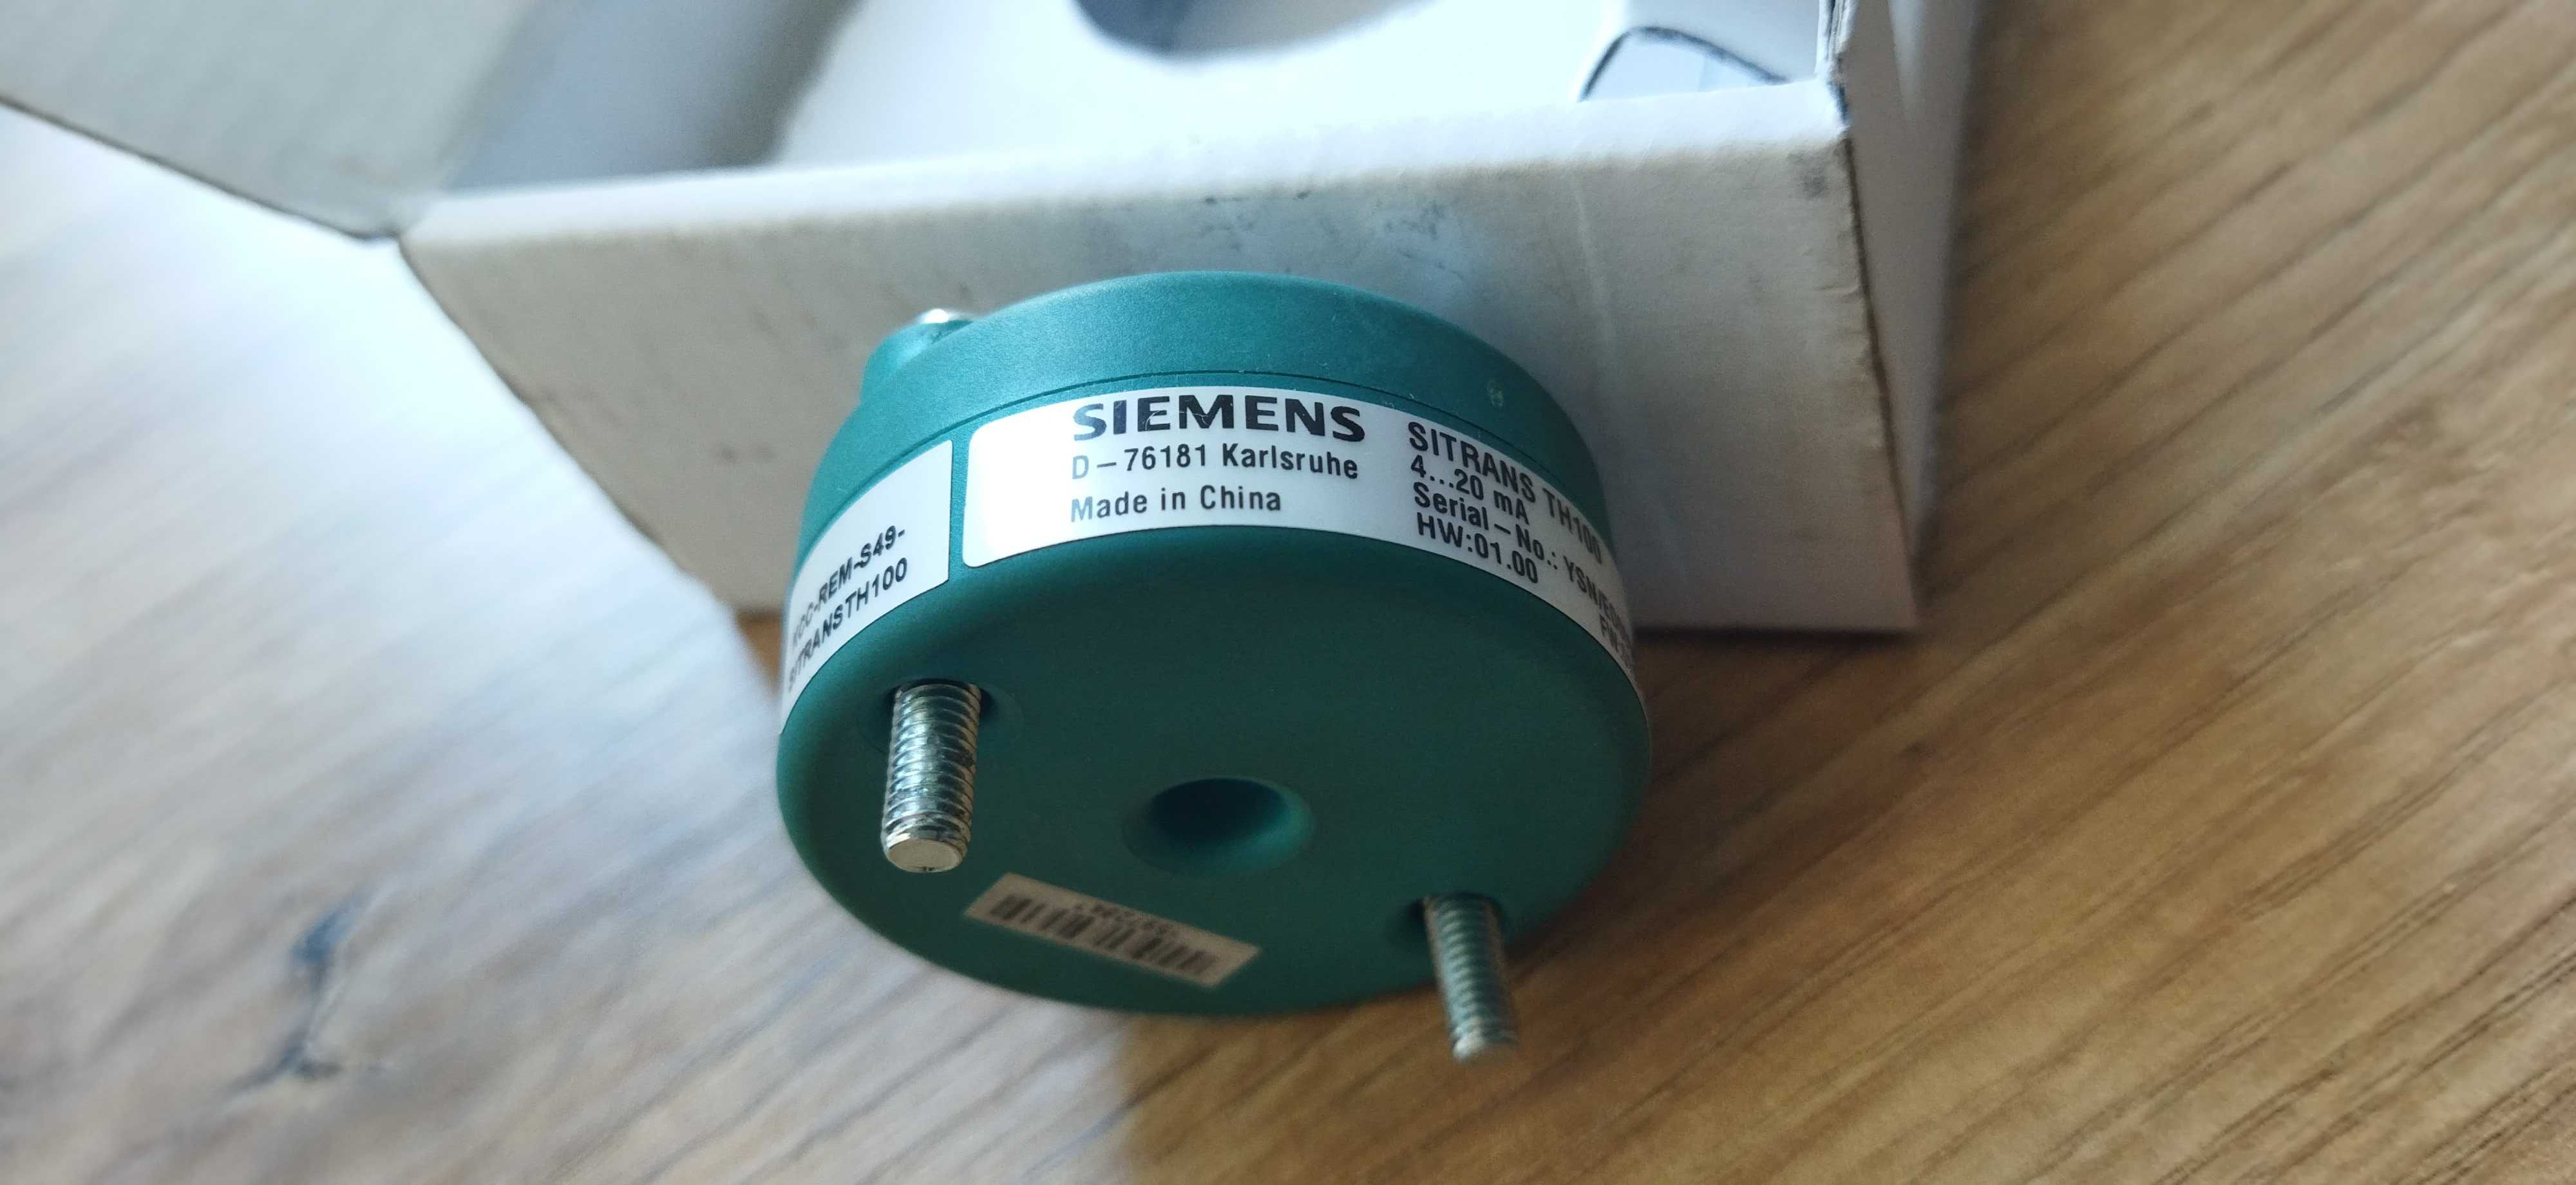 Перетворювач температури Siemens 7NG3211-0NN00